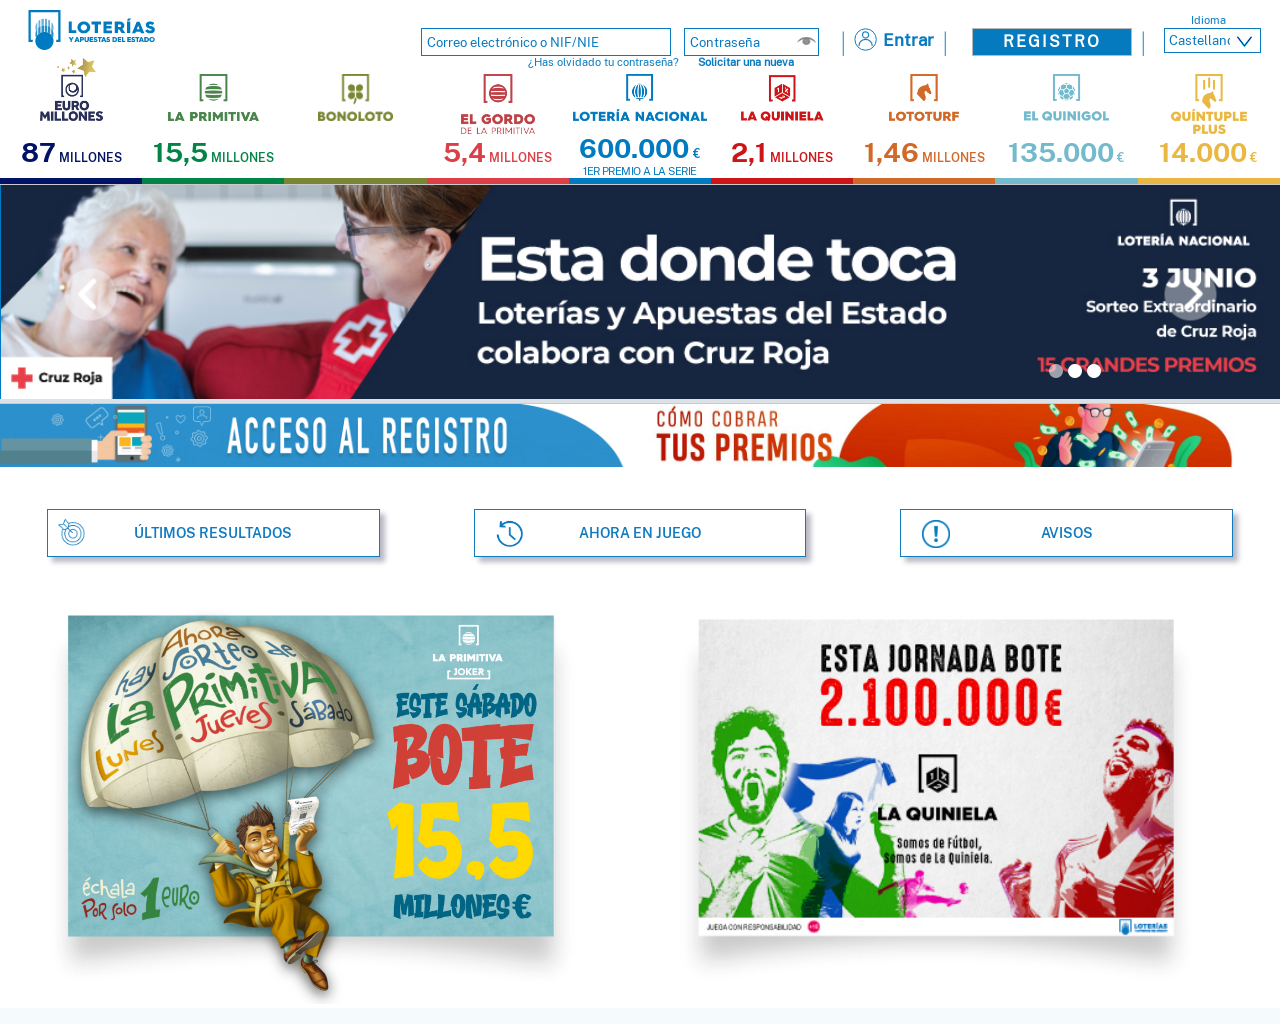 www.loteriasyapuestas.es